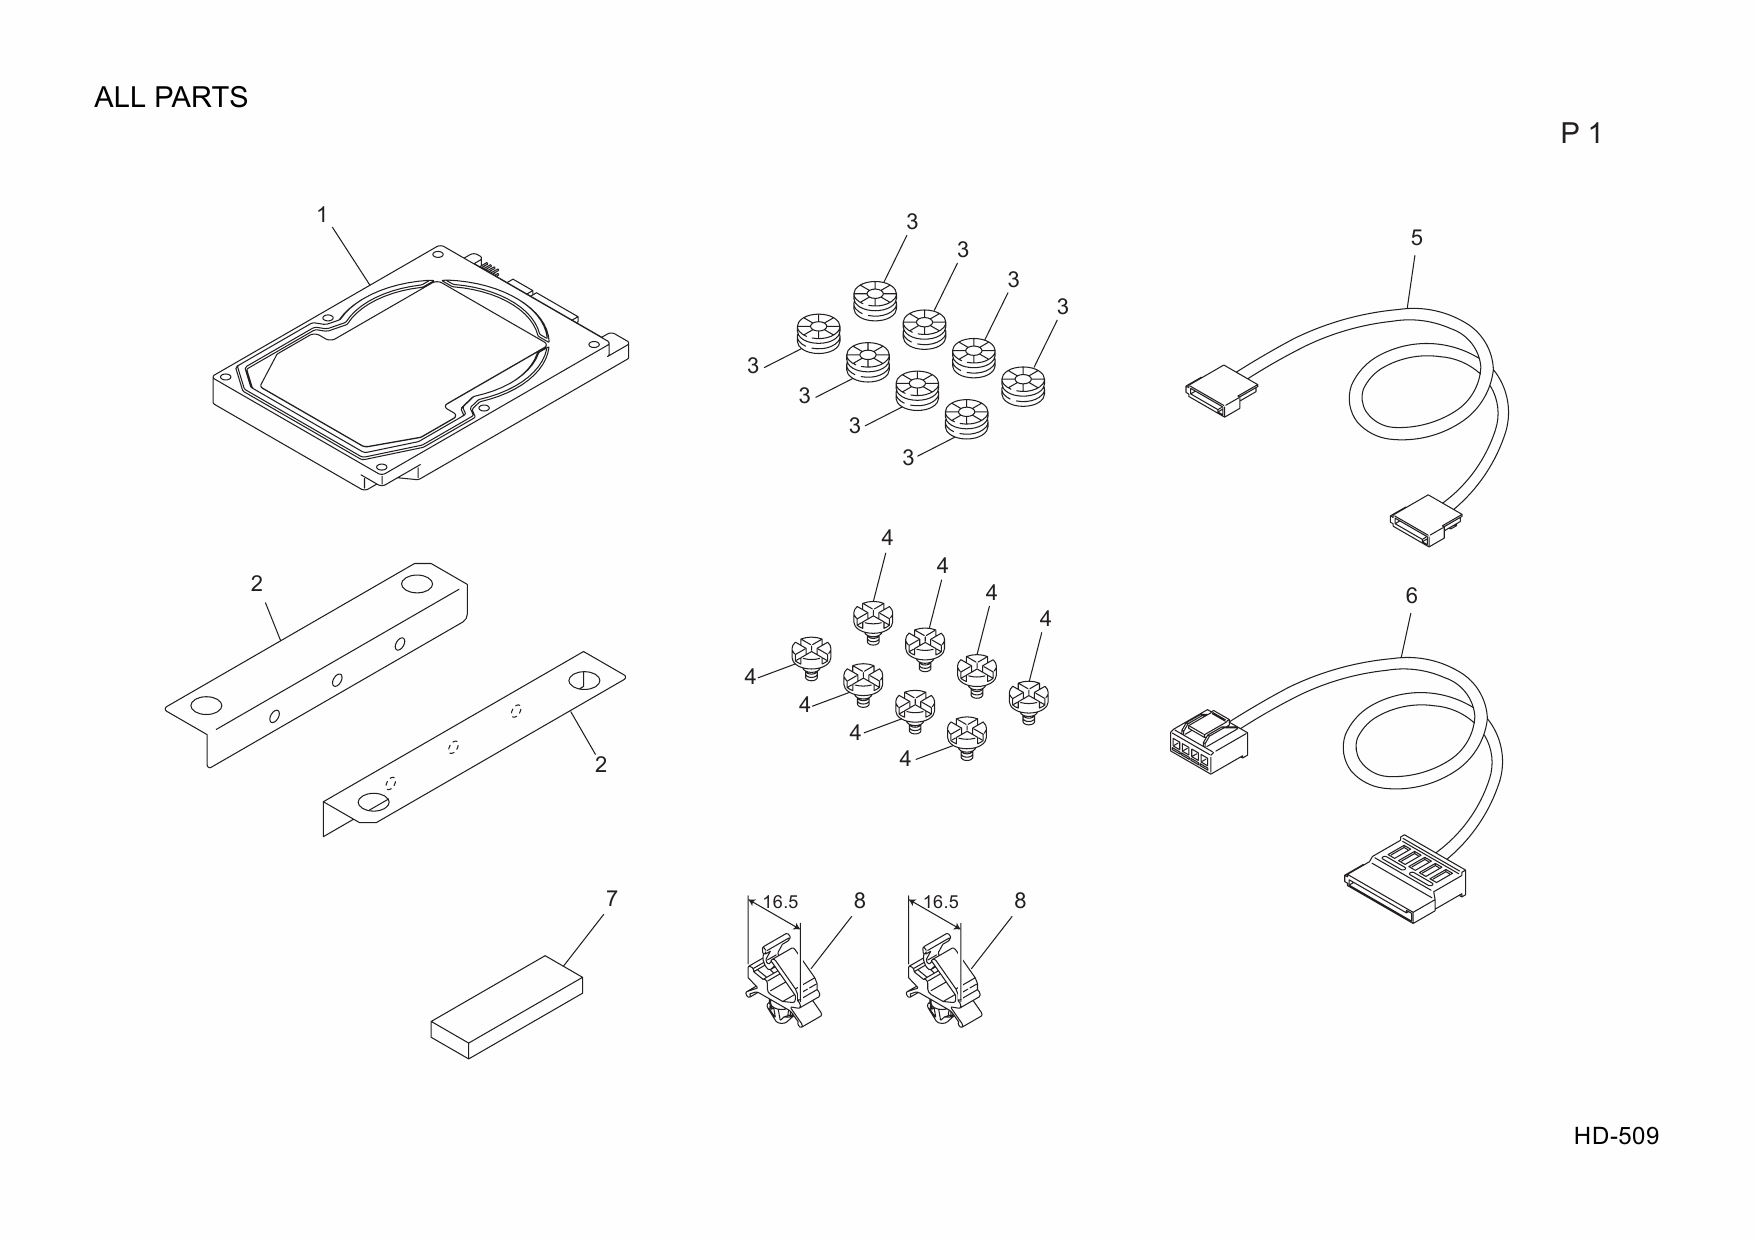 Konica-Minolta Options HD-509 A0P6 Parts Manual-5